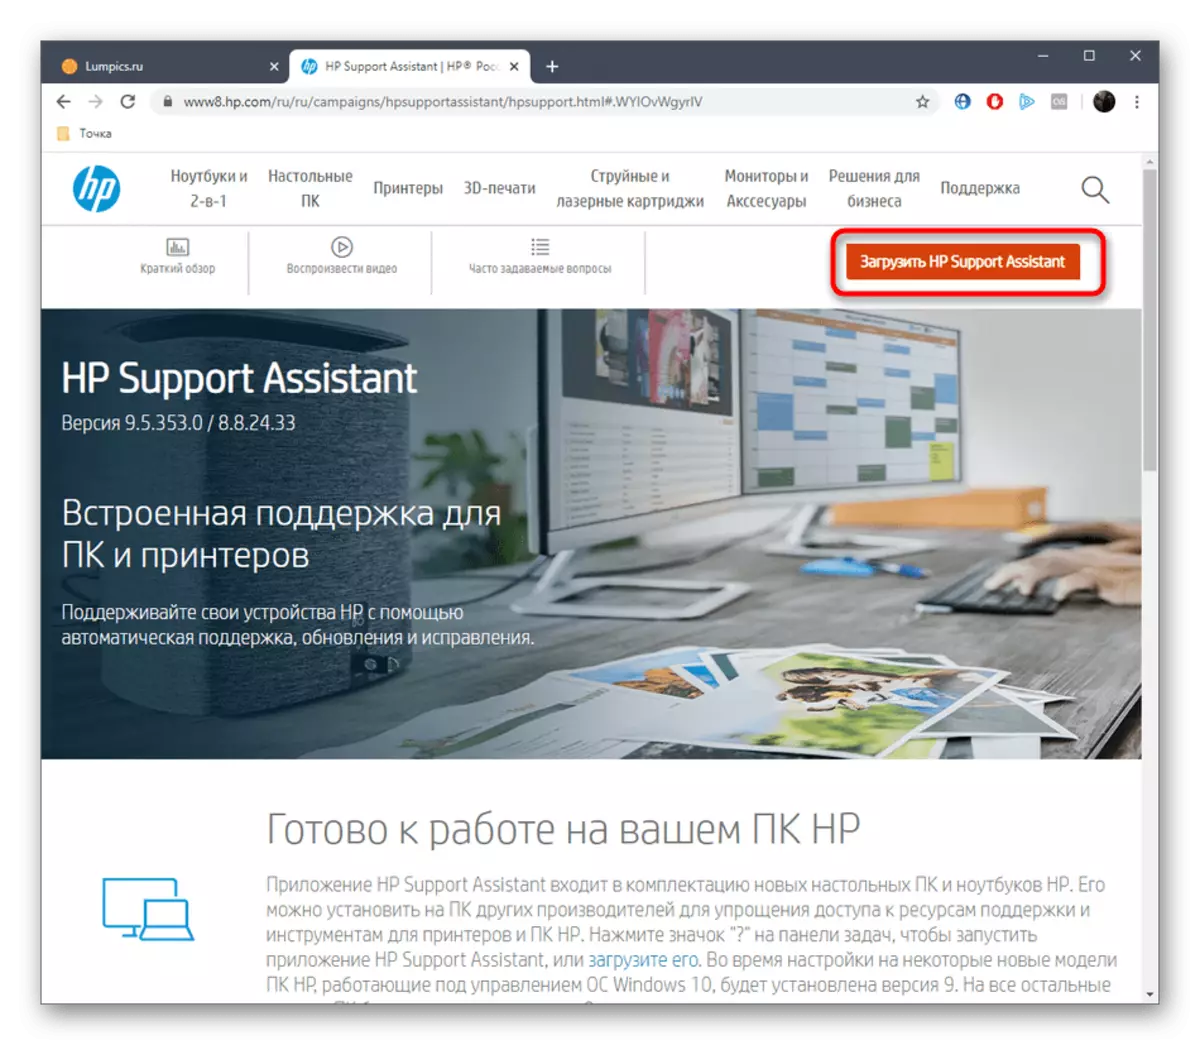 Esecuzione dell'Assistente di supporto HP Utility HP dal sito ufficiale